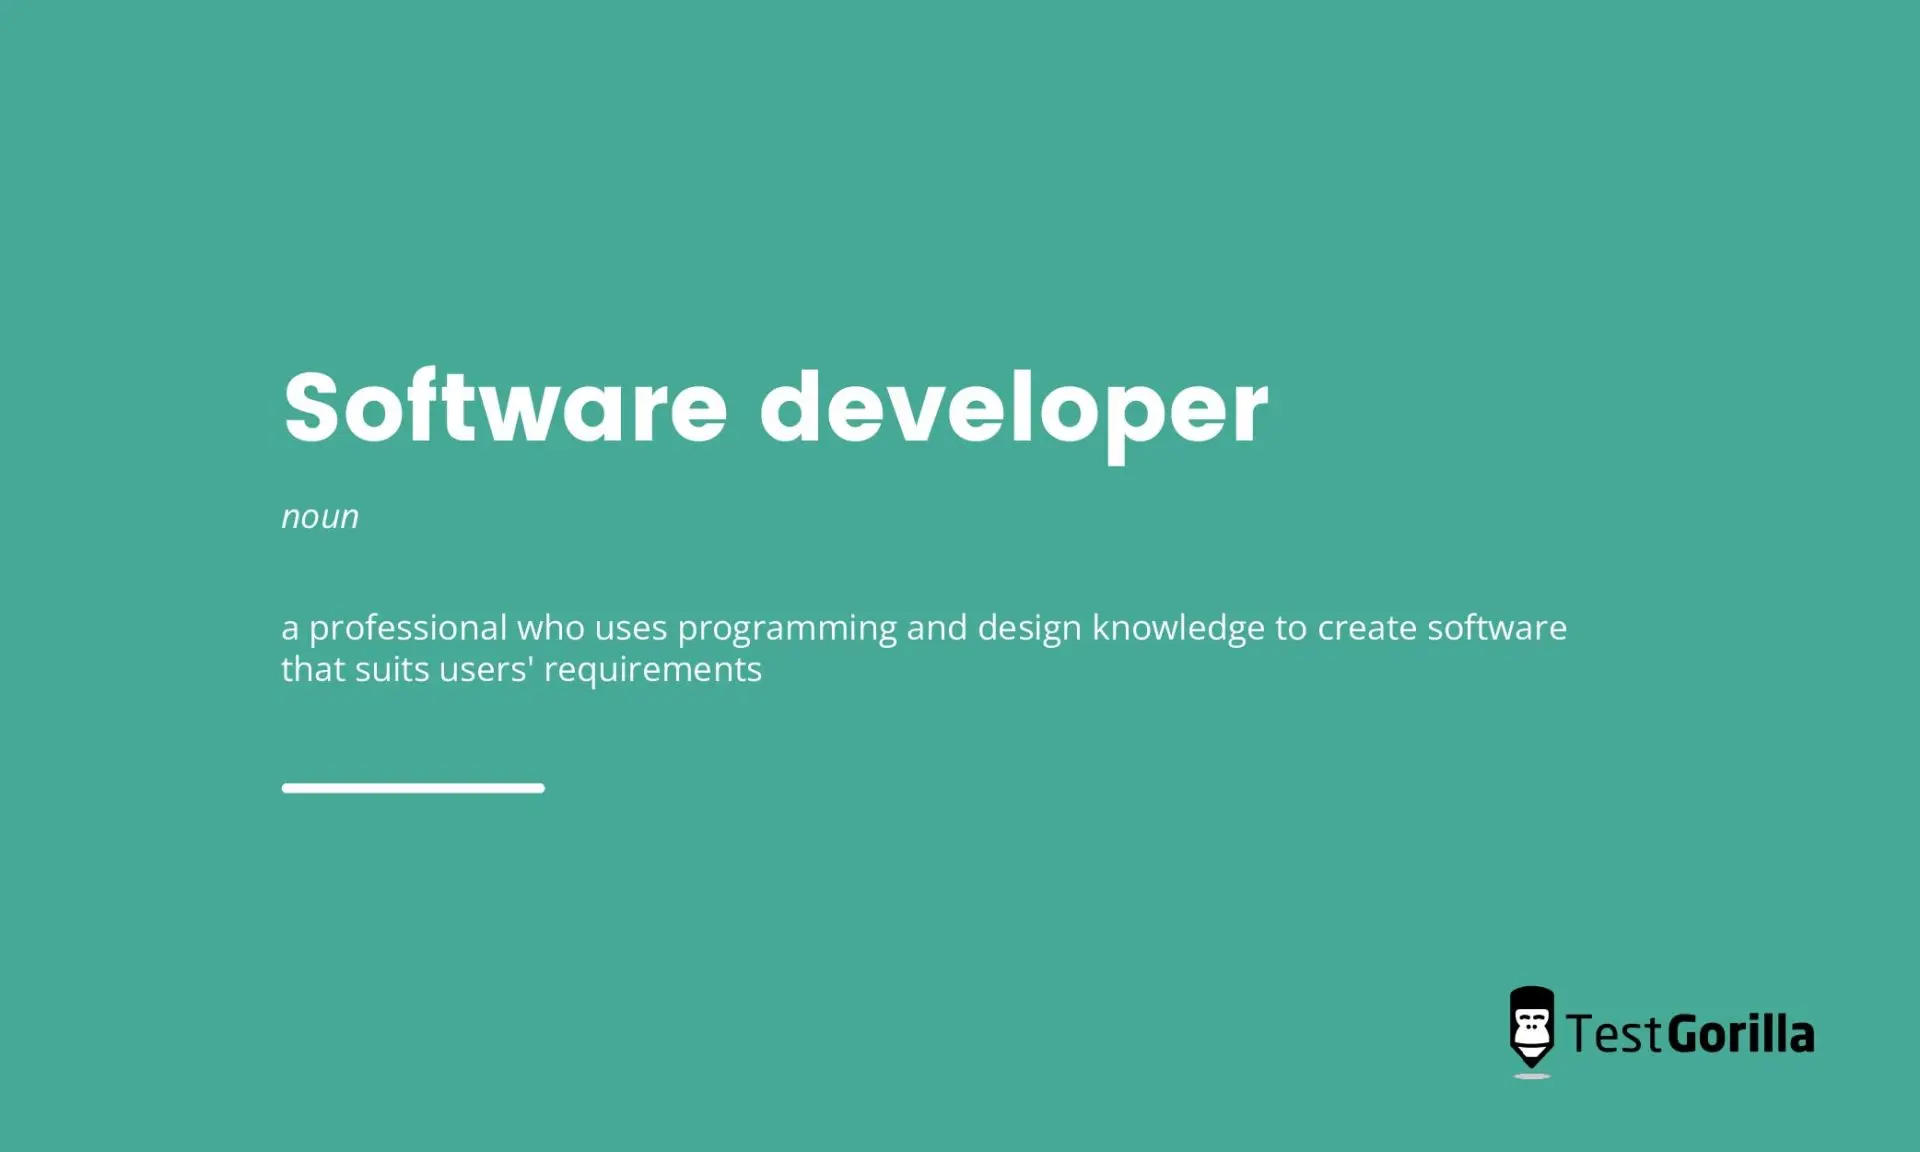 image showing definition of software developer